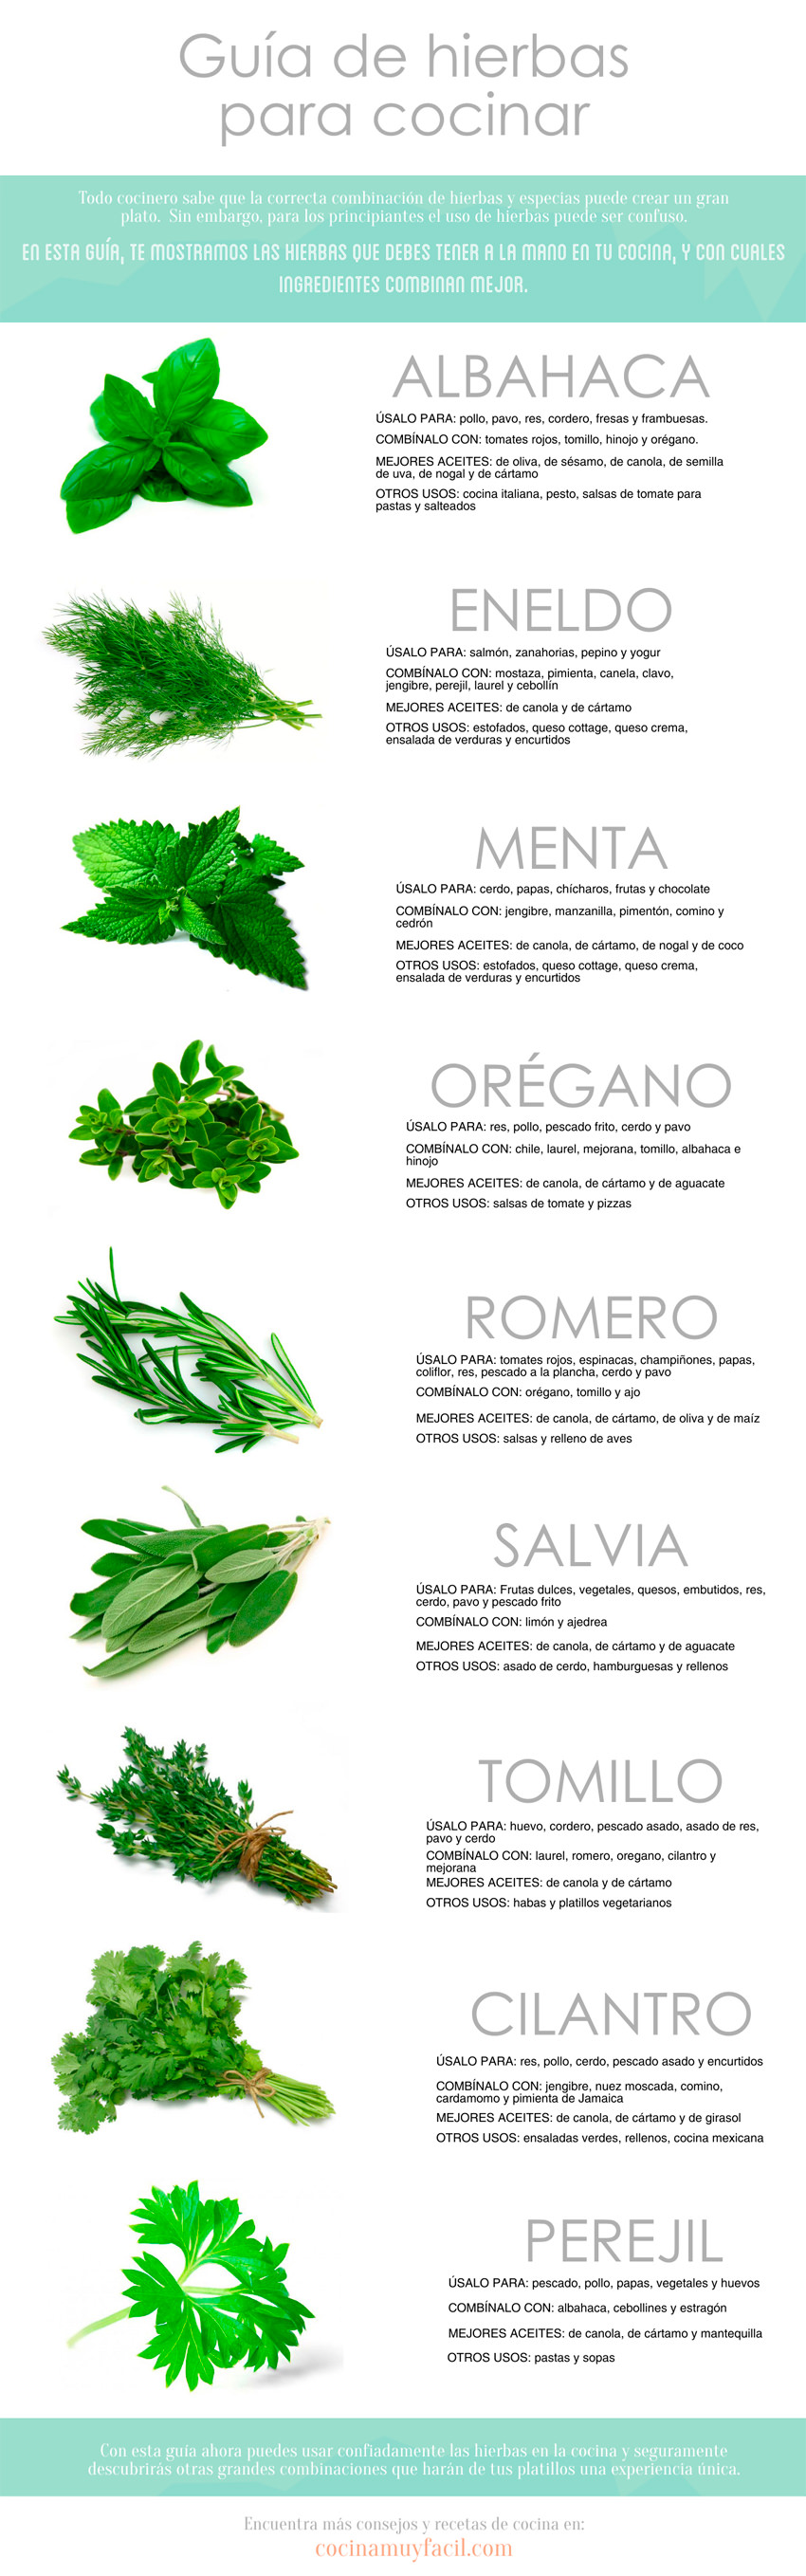 infografia-hierbas-cocinar_mini